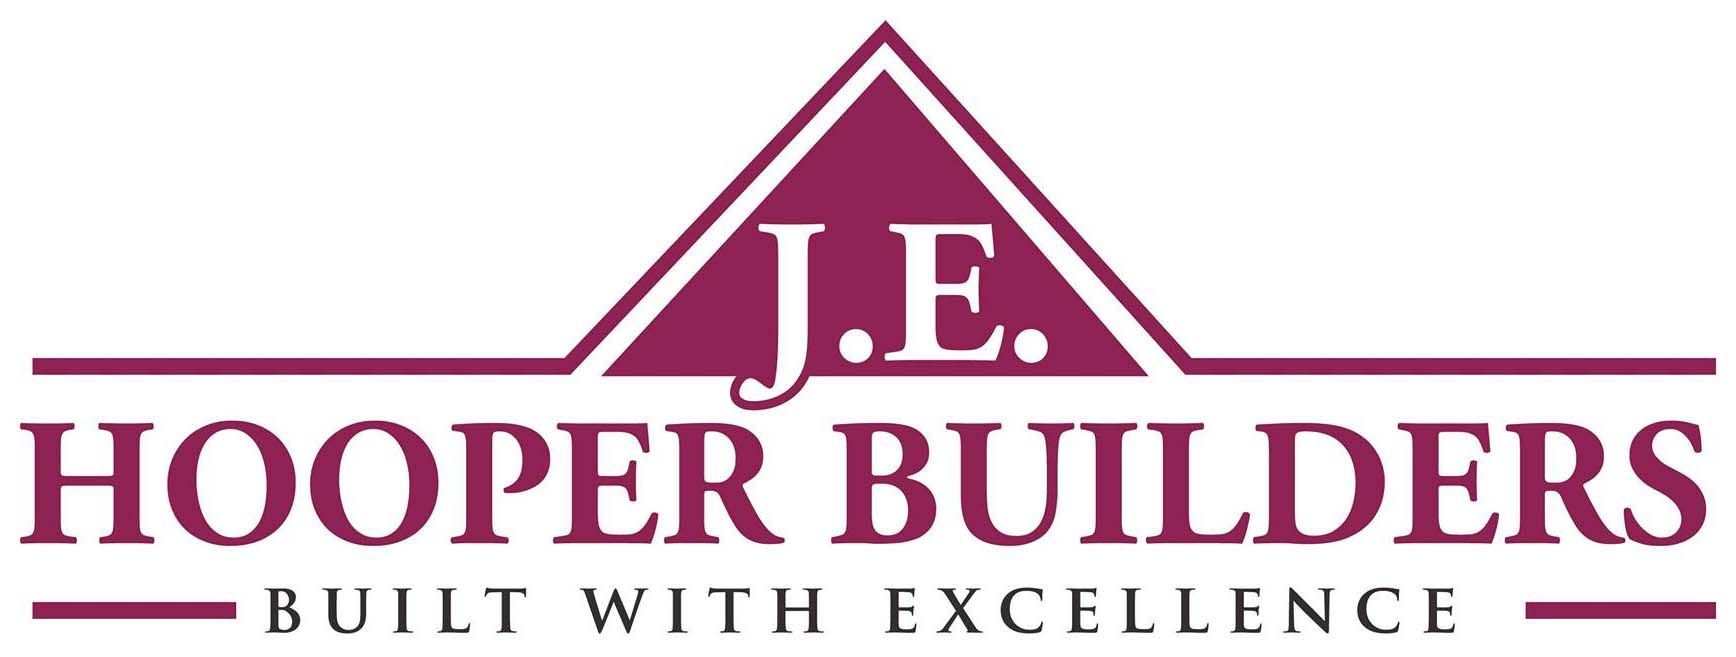 J.E. Hooper Builders